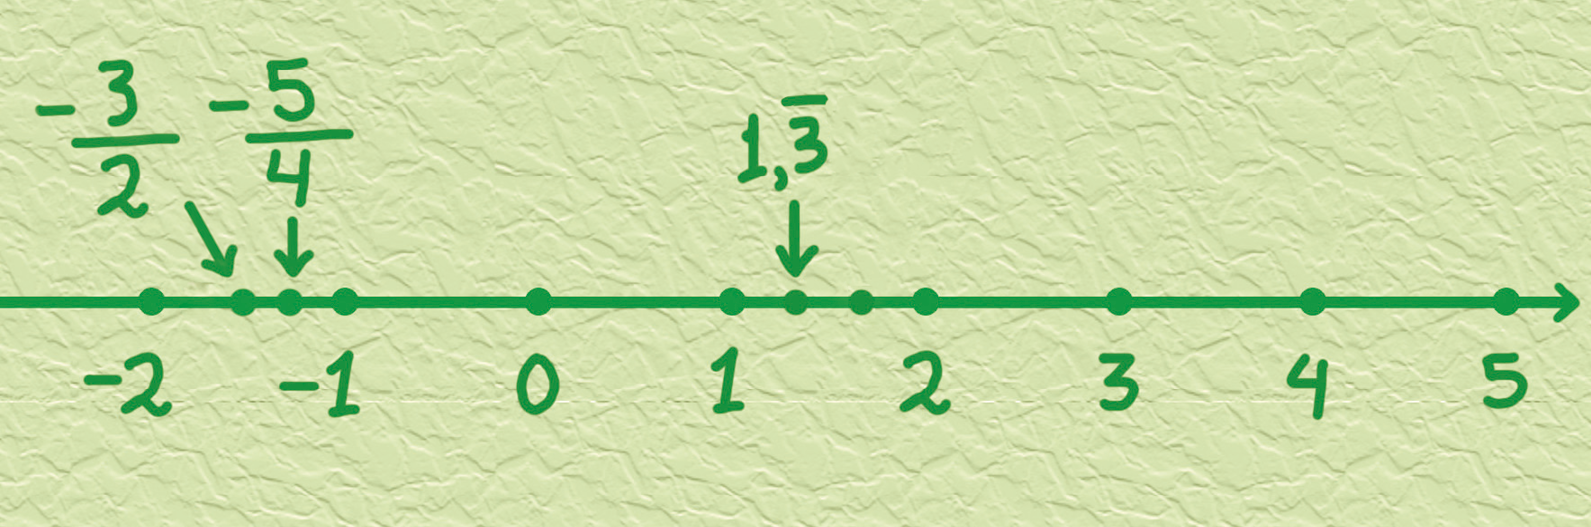 Gráfico: reta numérica em fundo verde, com 8 pontos equidistantes correspondentes aos números menos dois, menos um, 0, 1, 2, 3, 4 e 5. Ponto médio dos números menos dois e menos um, com indicação menos fração três sobre dois. Ponto médio dos números menos fração três sobre dois e menos um, com indicação menos fração cinco quartos. Intervalo entre os números 1 e 2 dividido em 3 partes iguais por meio de 2 pontos: no primeiro desses pontos, indicação 1 vírgula 3, com um traço horizontal acima do 3.